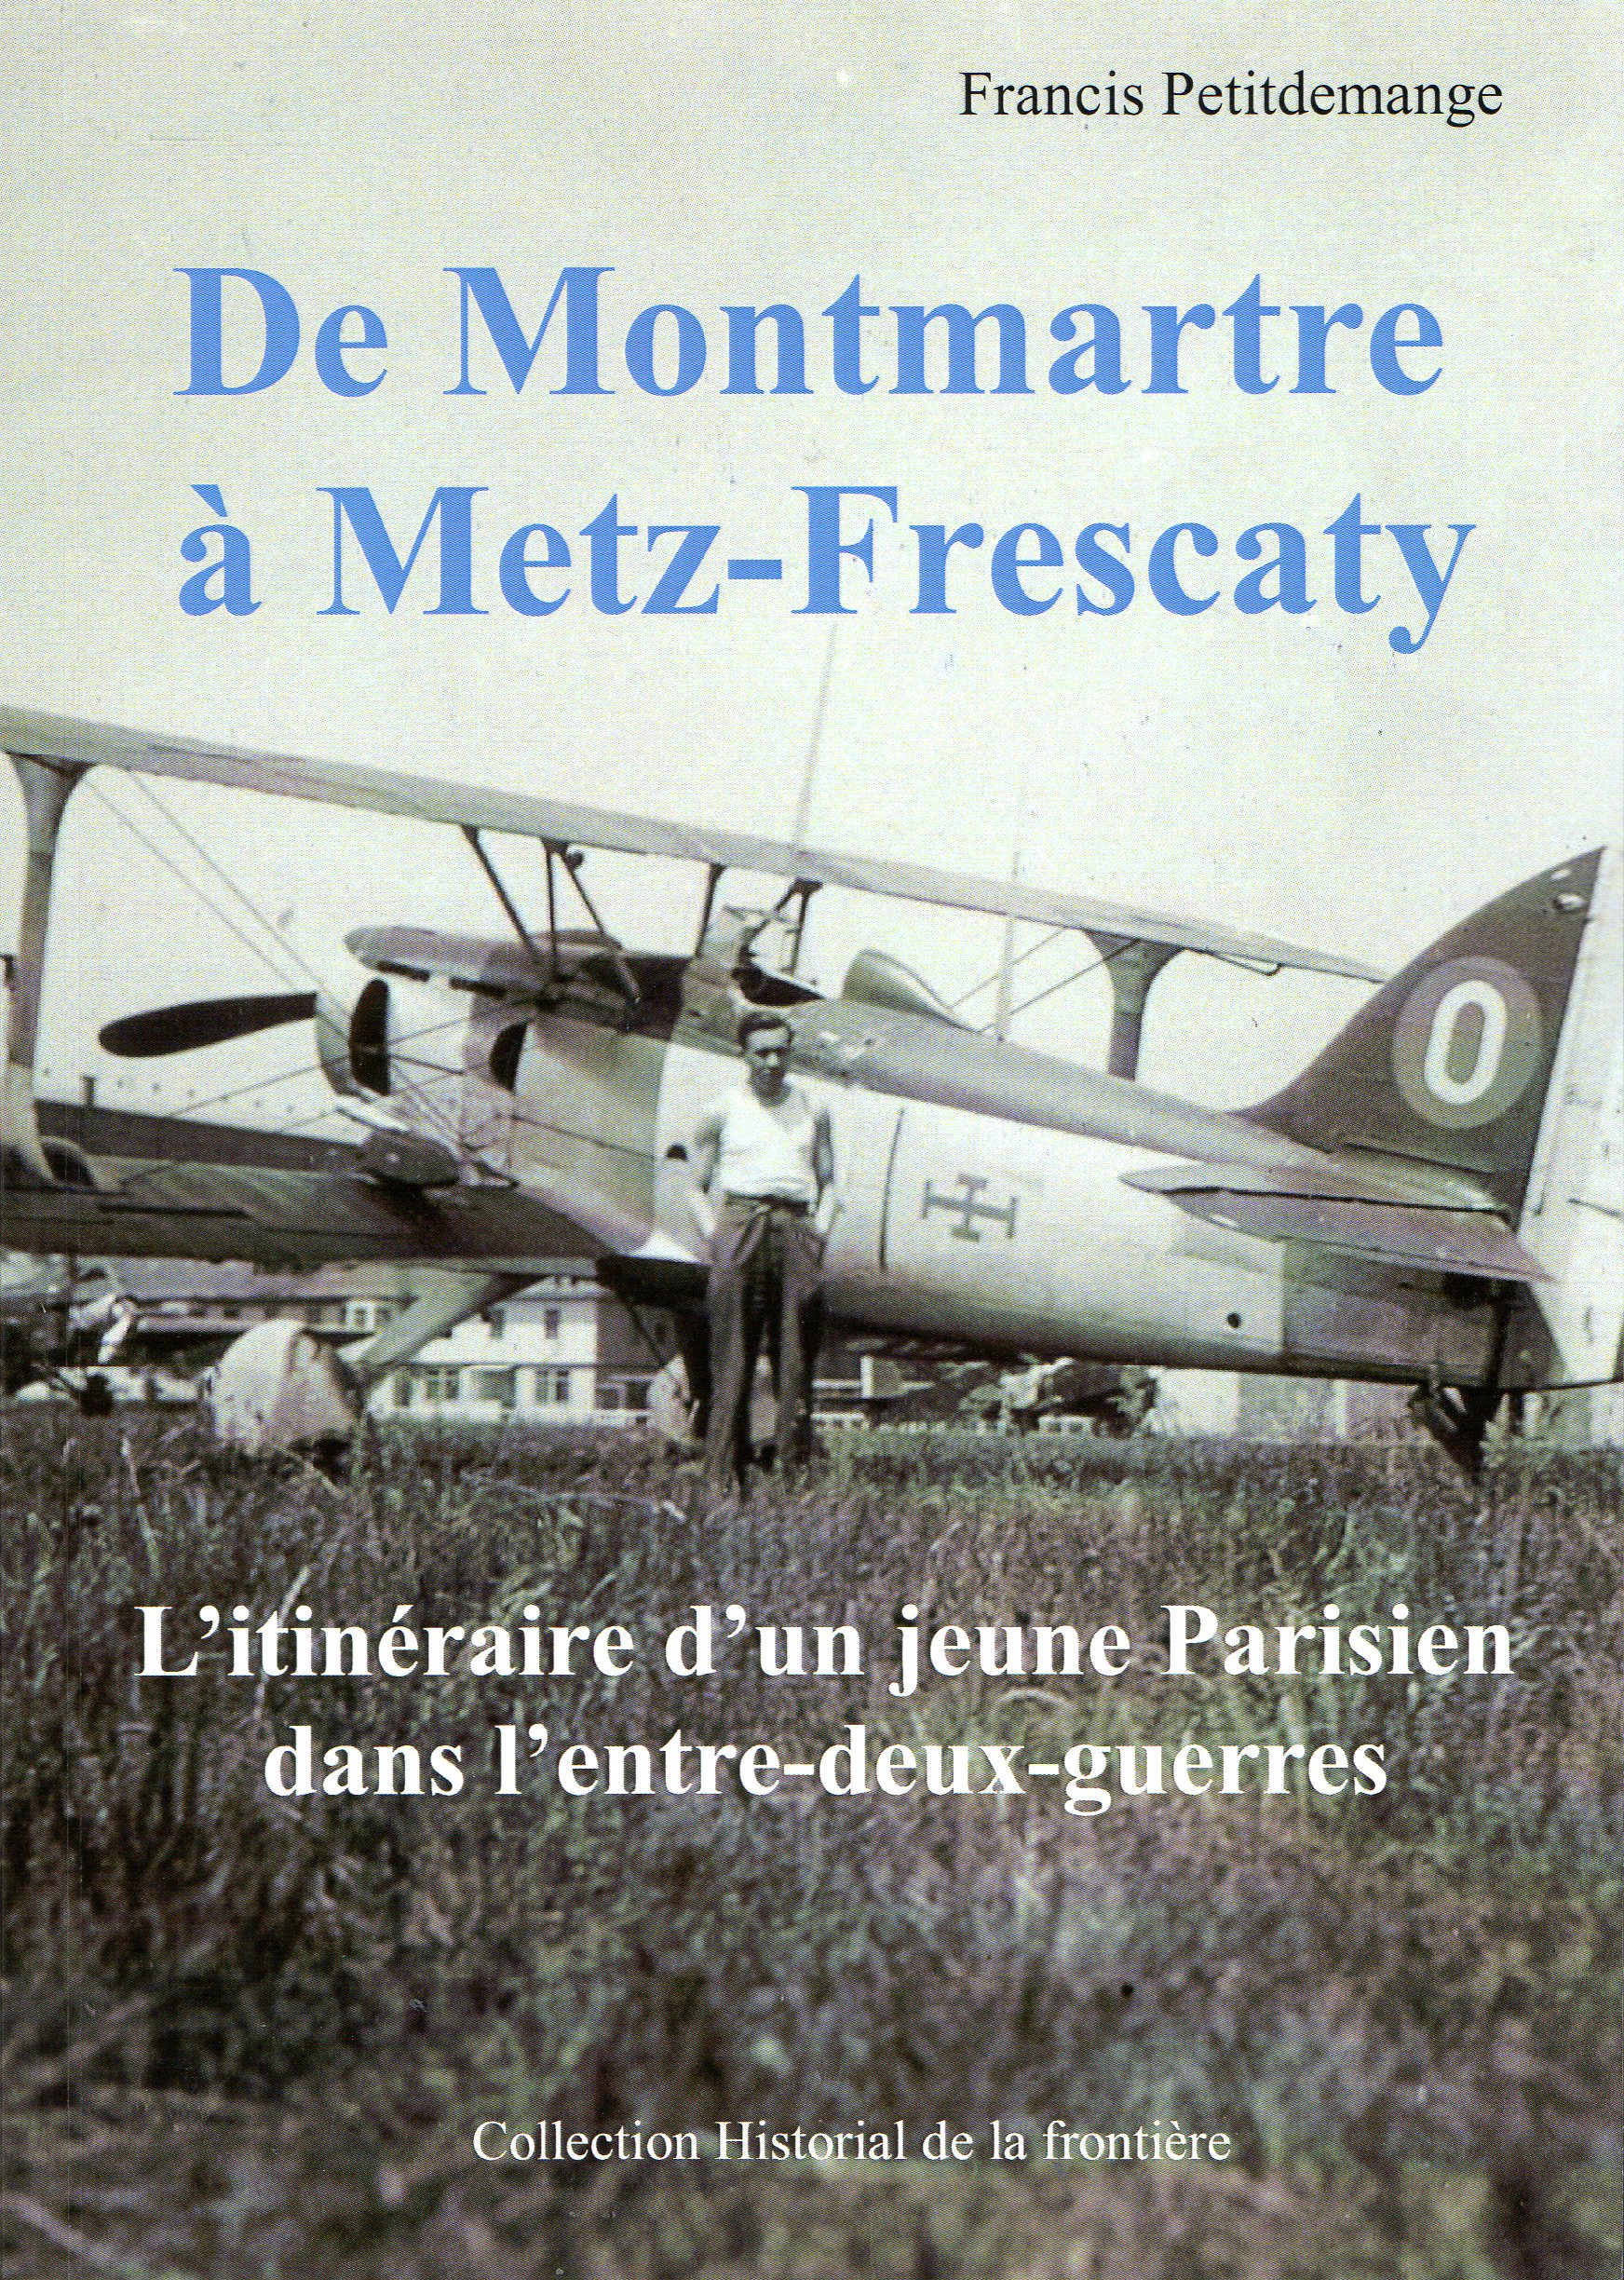 1ère de couverture De Montmartre à Metz Frescaty